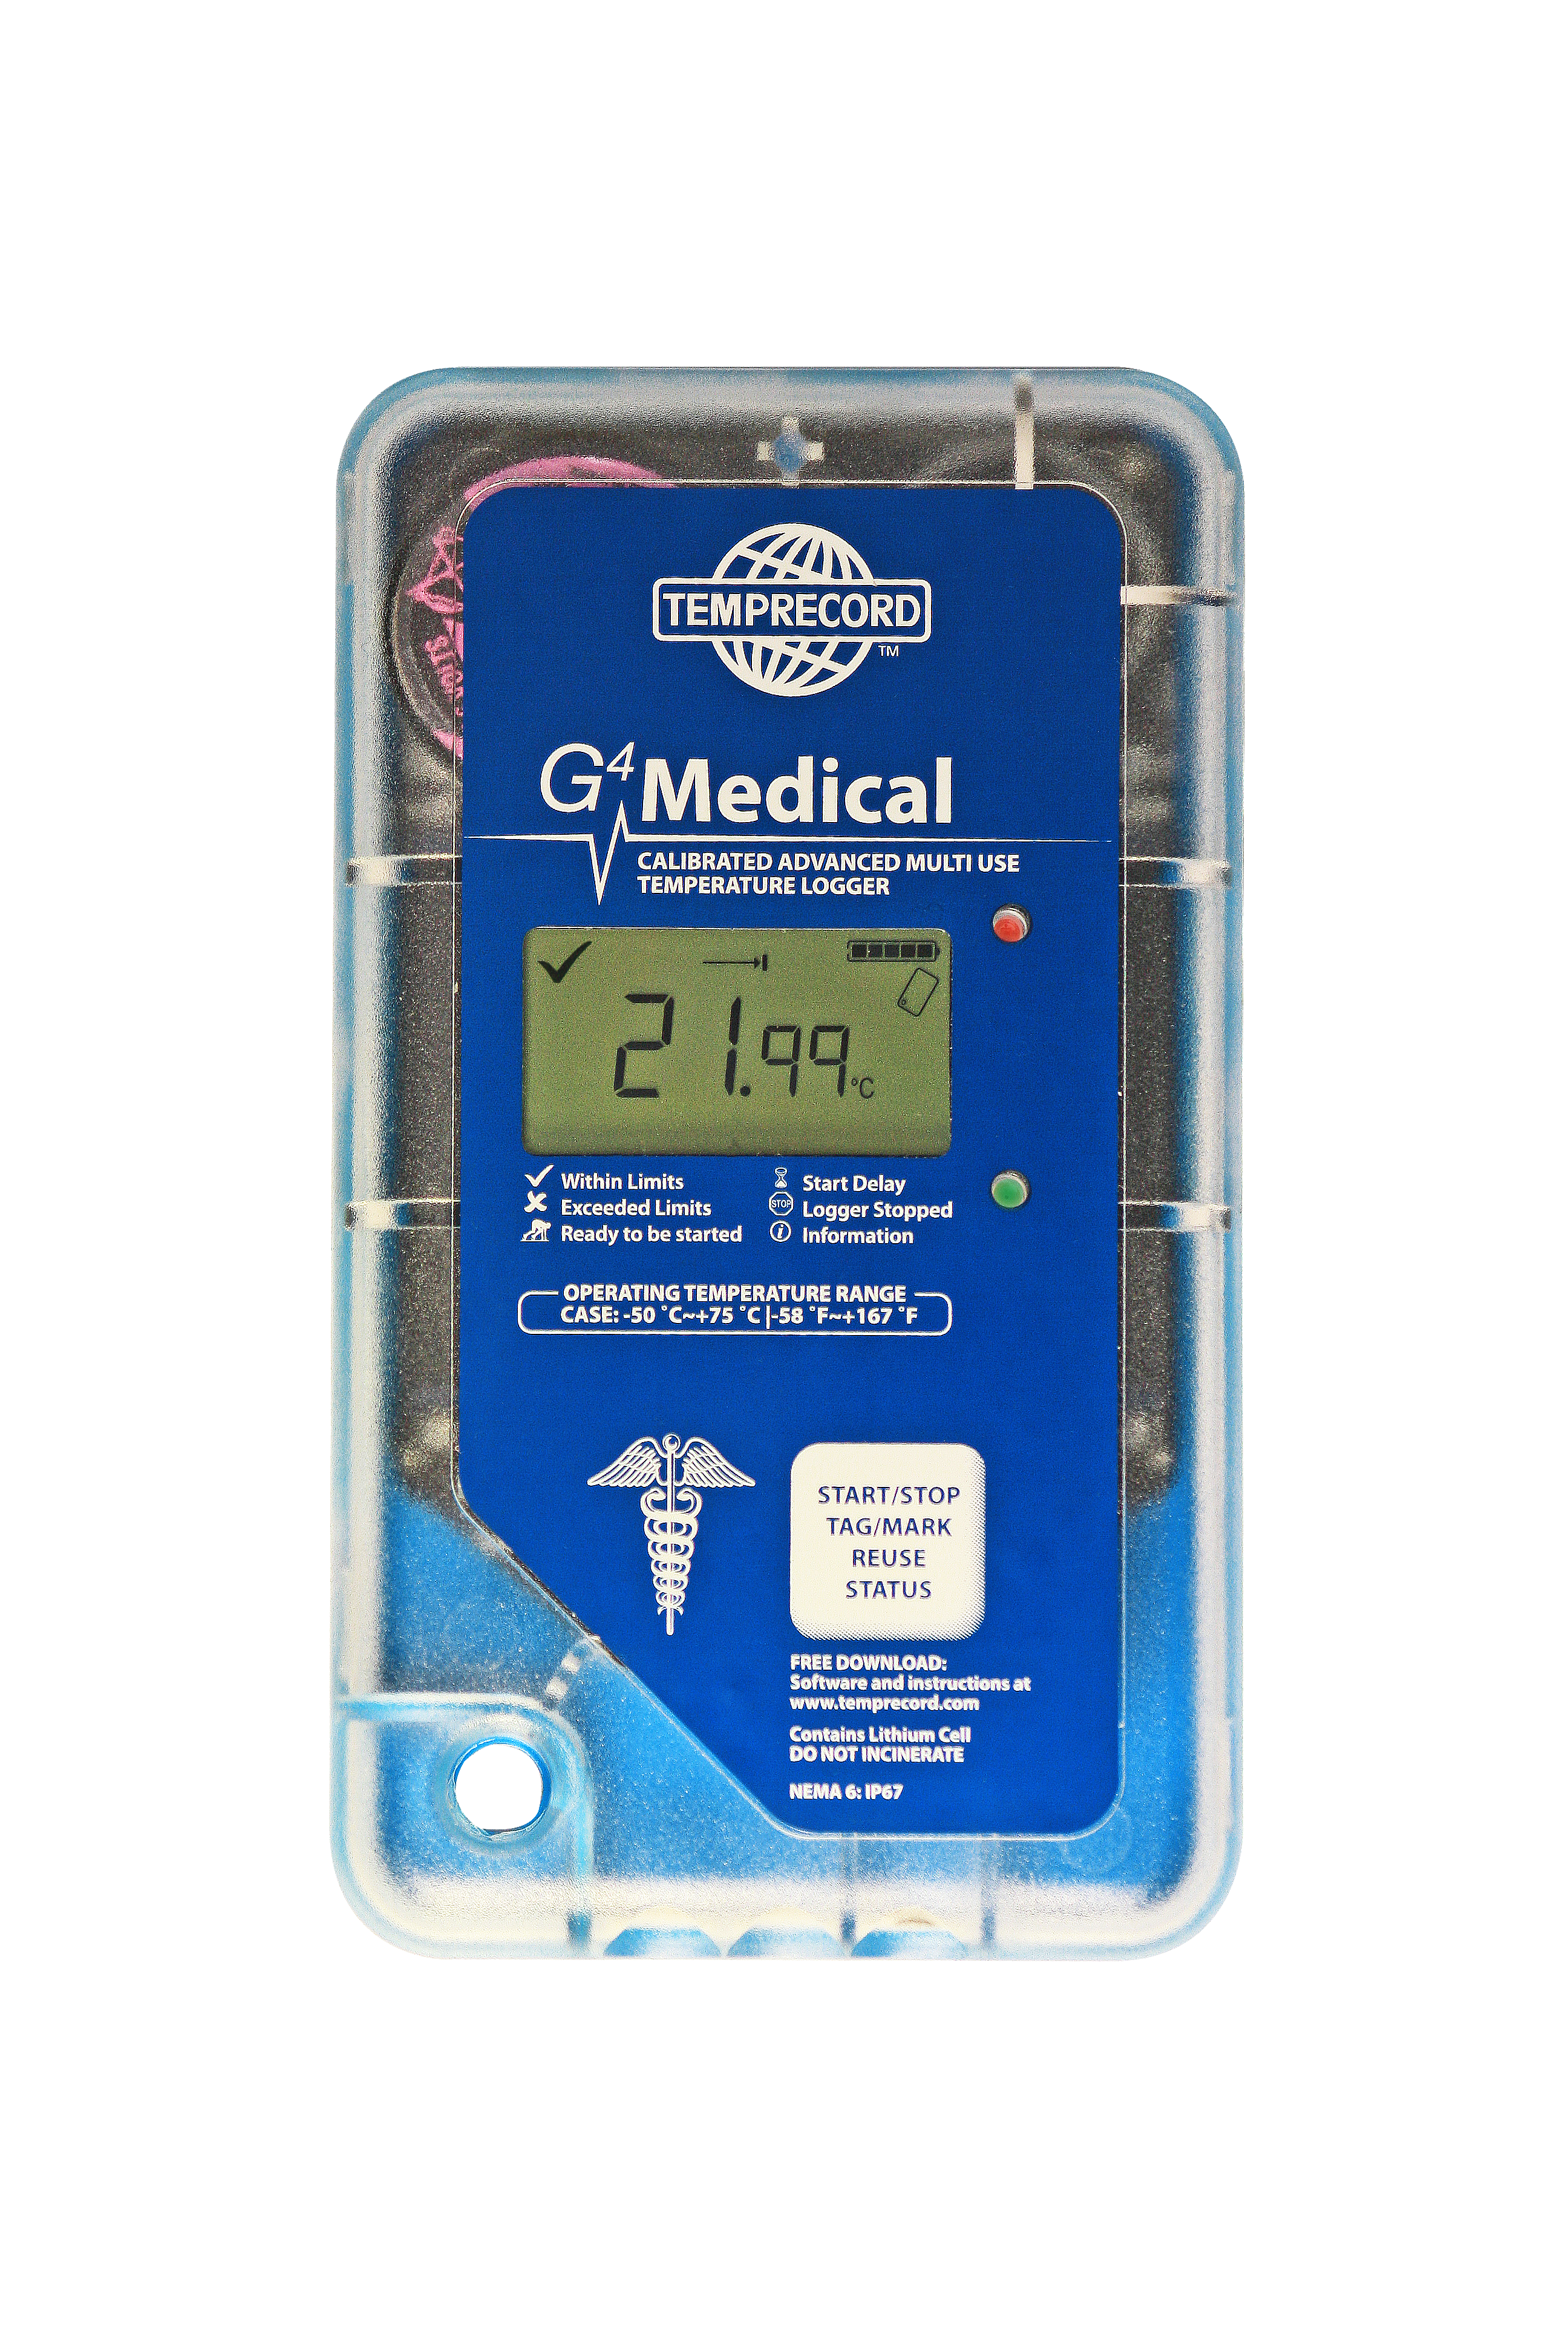 G4 Medical Data Logger